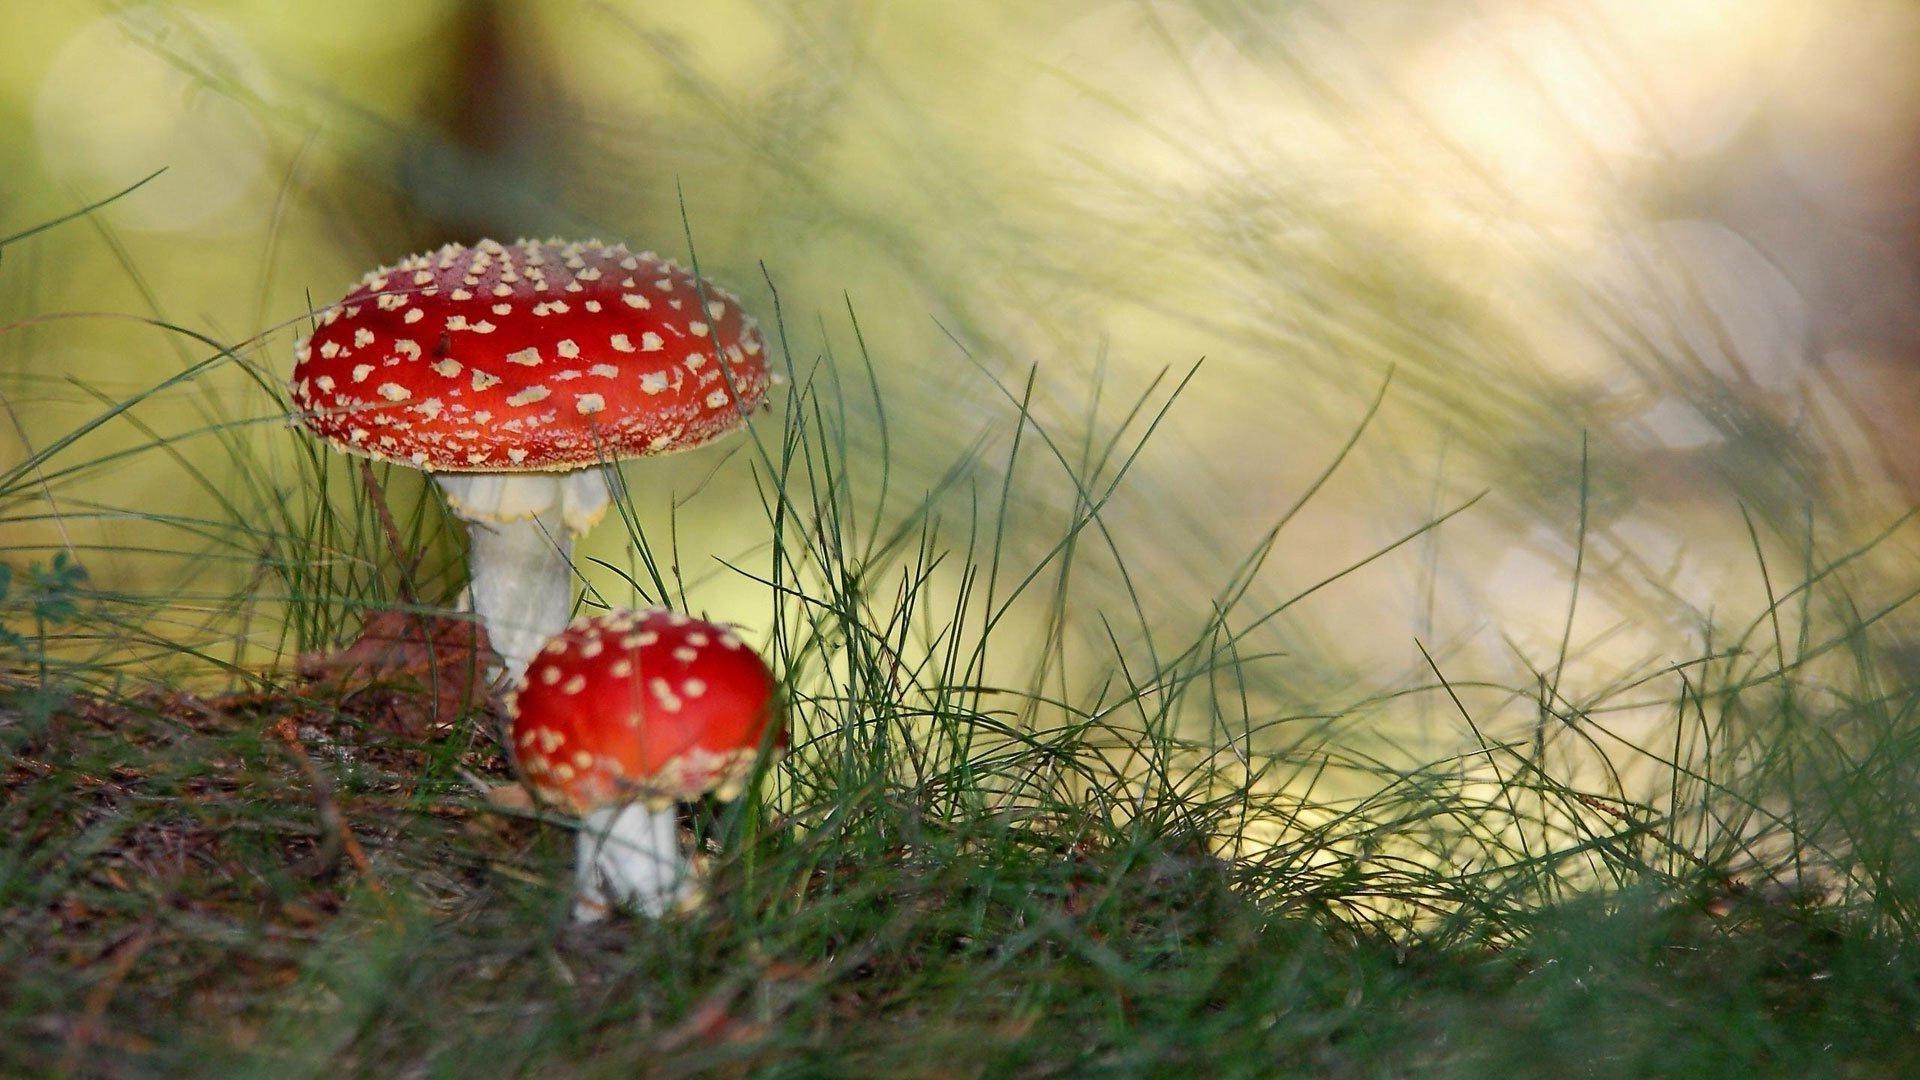 грибы гриб трава грибок природа осень поганки на открытом воздухе дикий сезон еда яд рост древесины флора крышка лето лист цвет